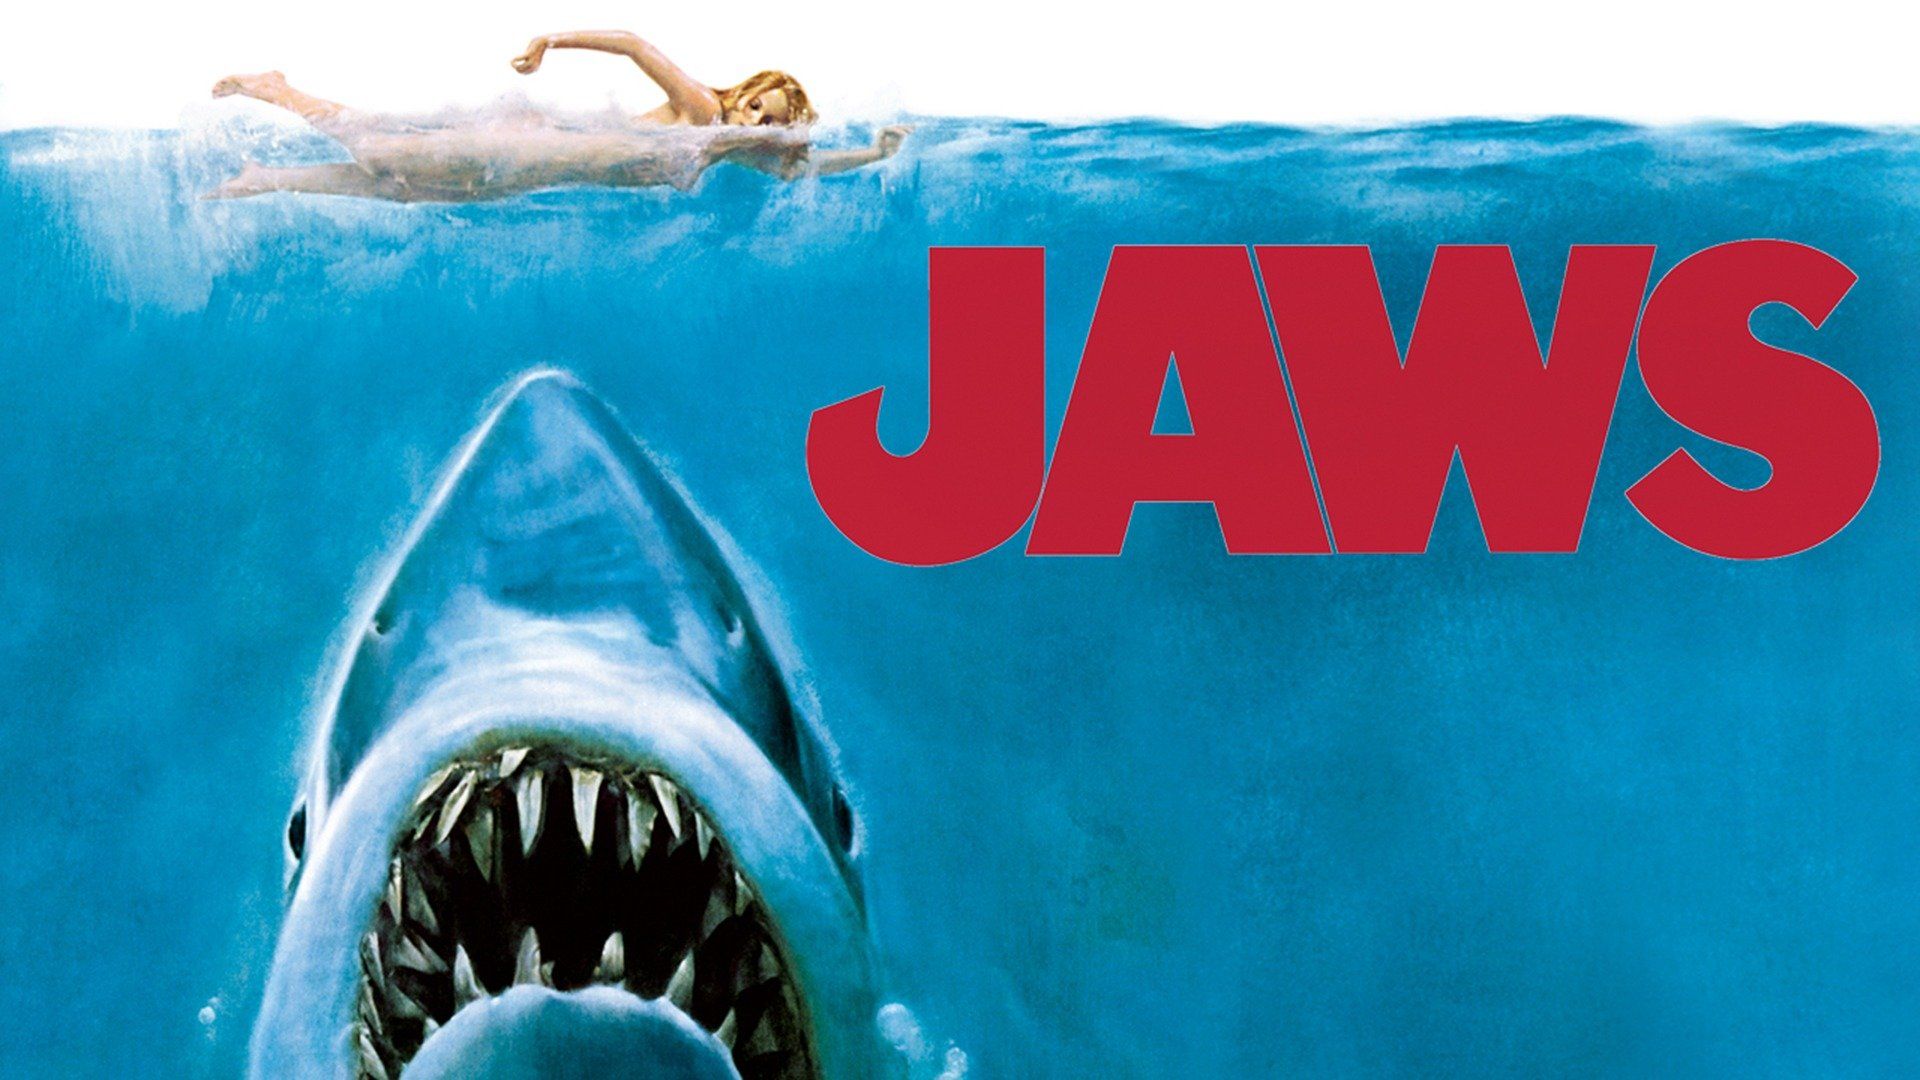 Watch Jaws (1975) Full Movie Online - Plex